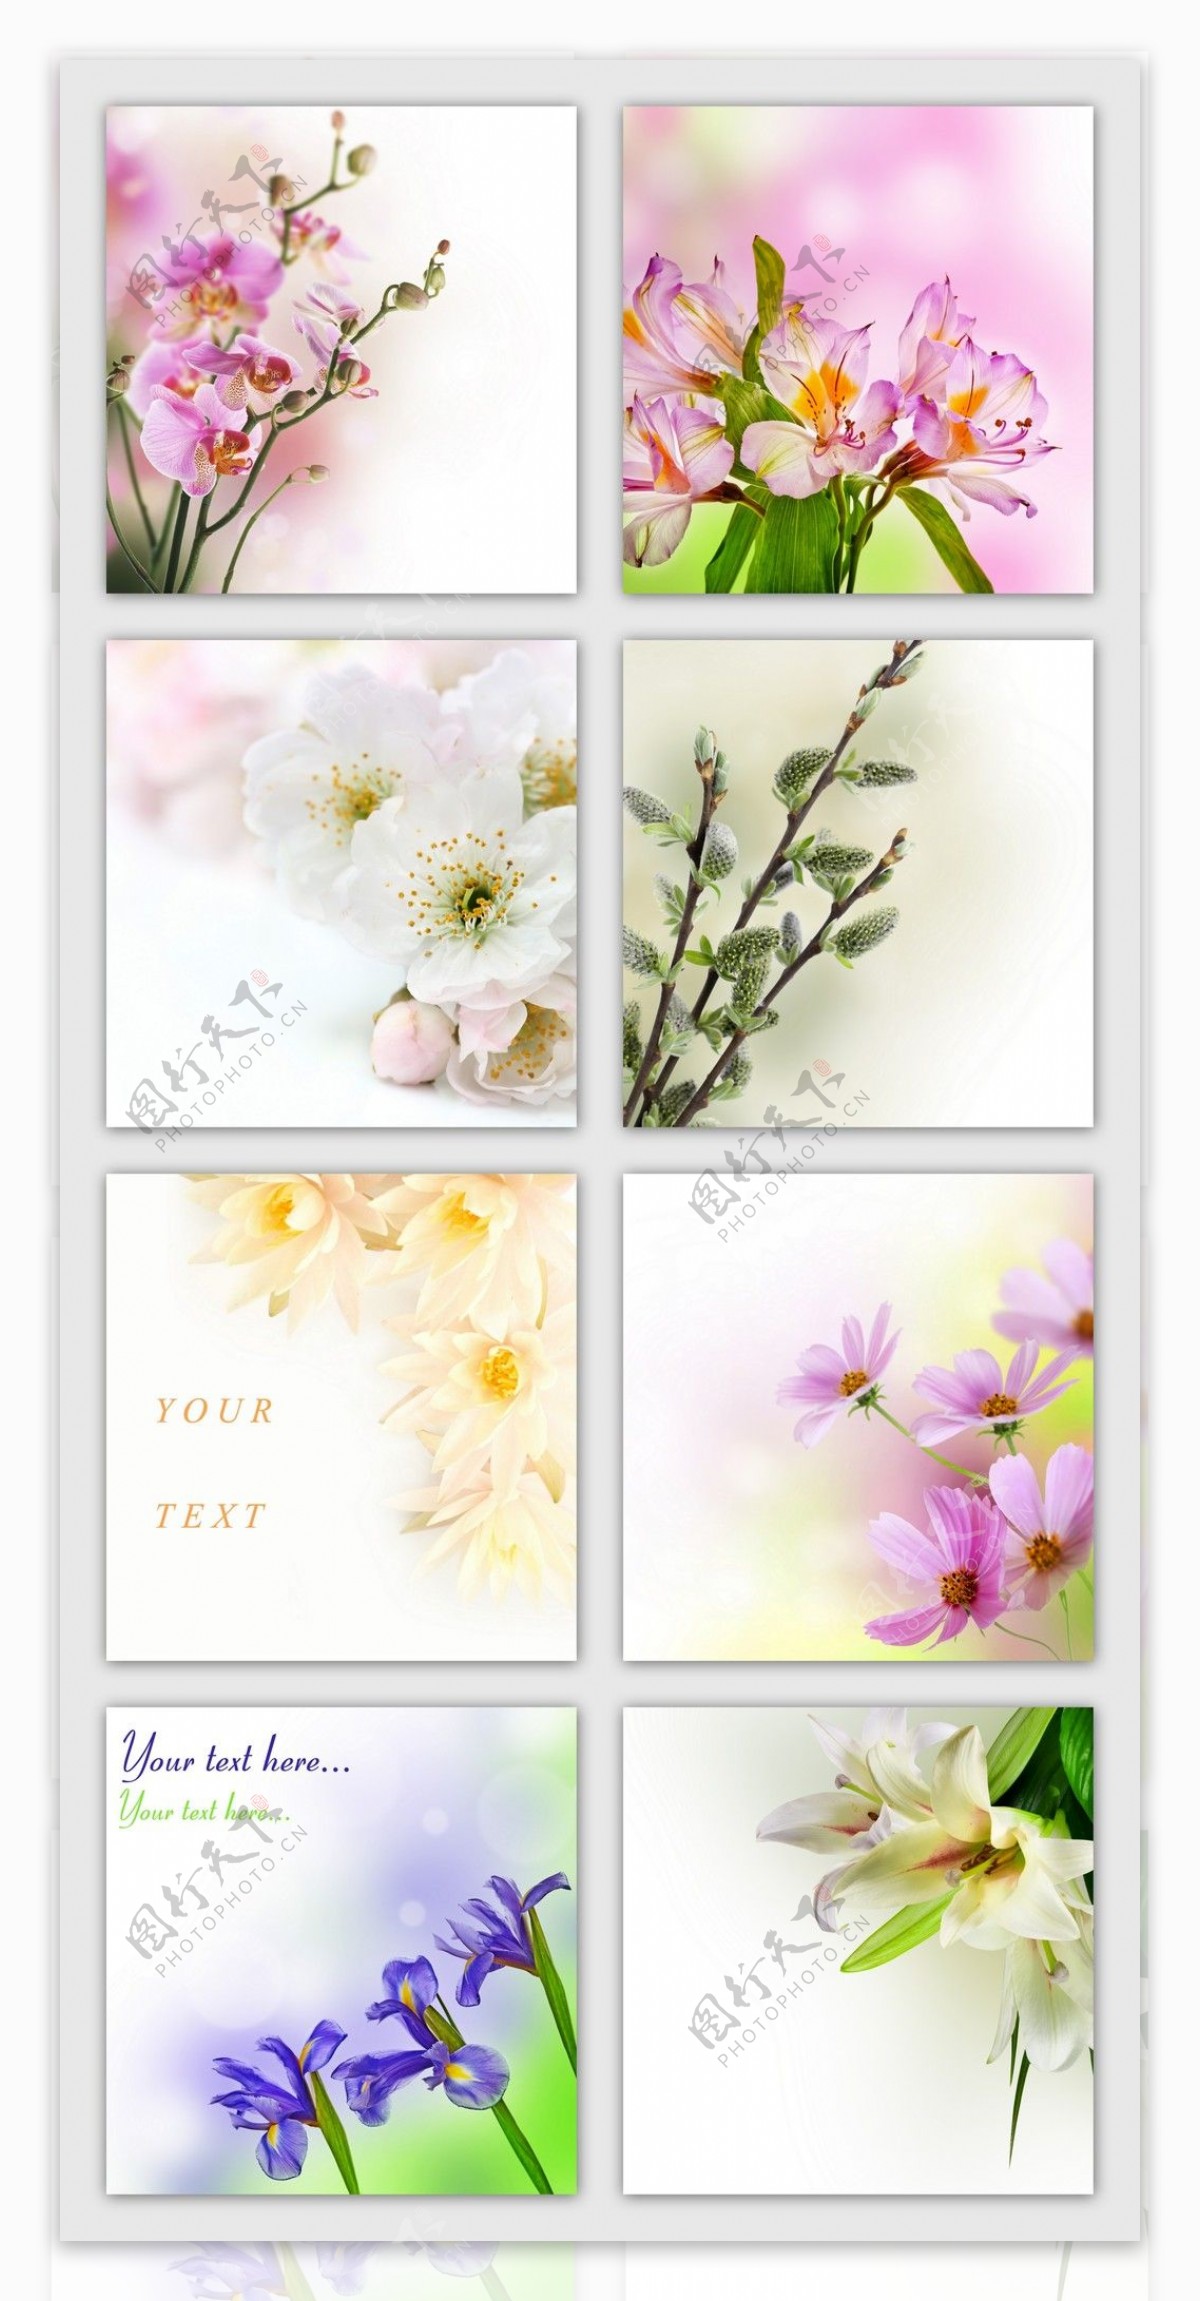 高清水彩花卉大集合常用背景设计素材